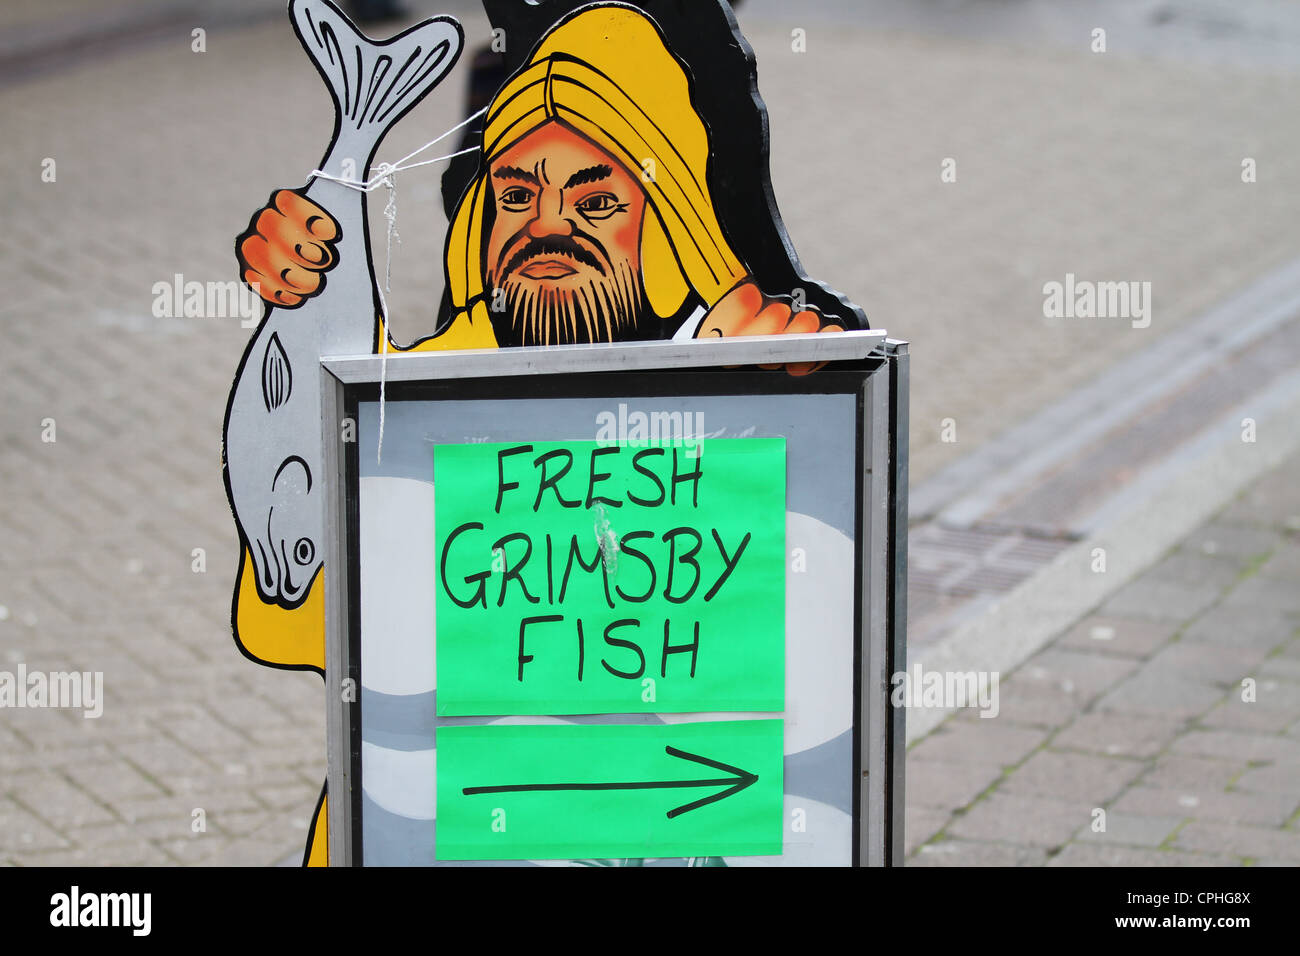 Grimsby Grimsby signe Poissons frais marchand de poisson Banque D'Images